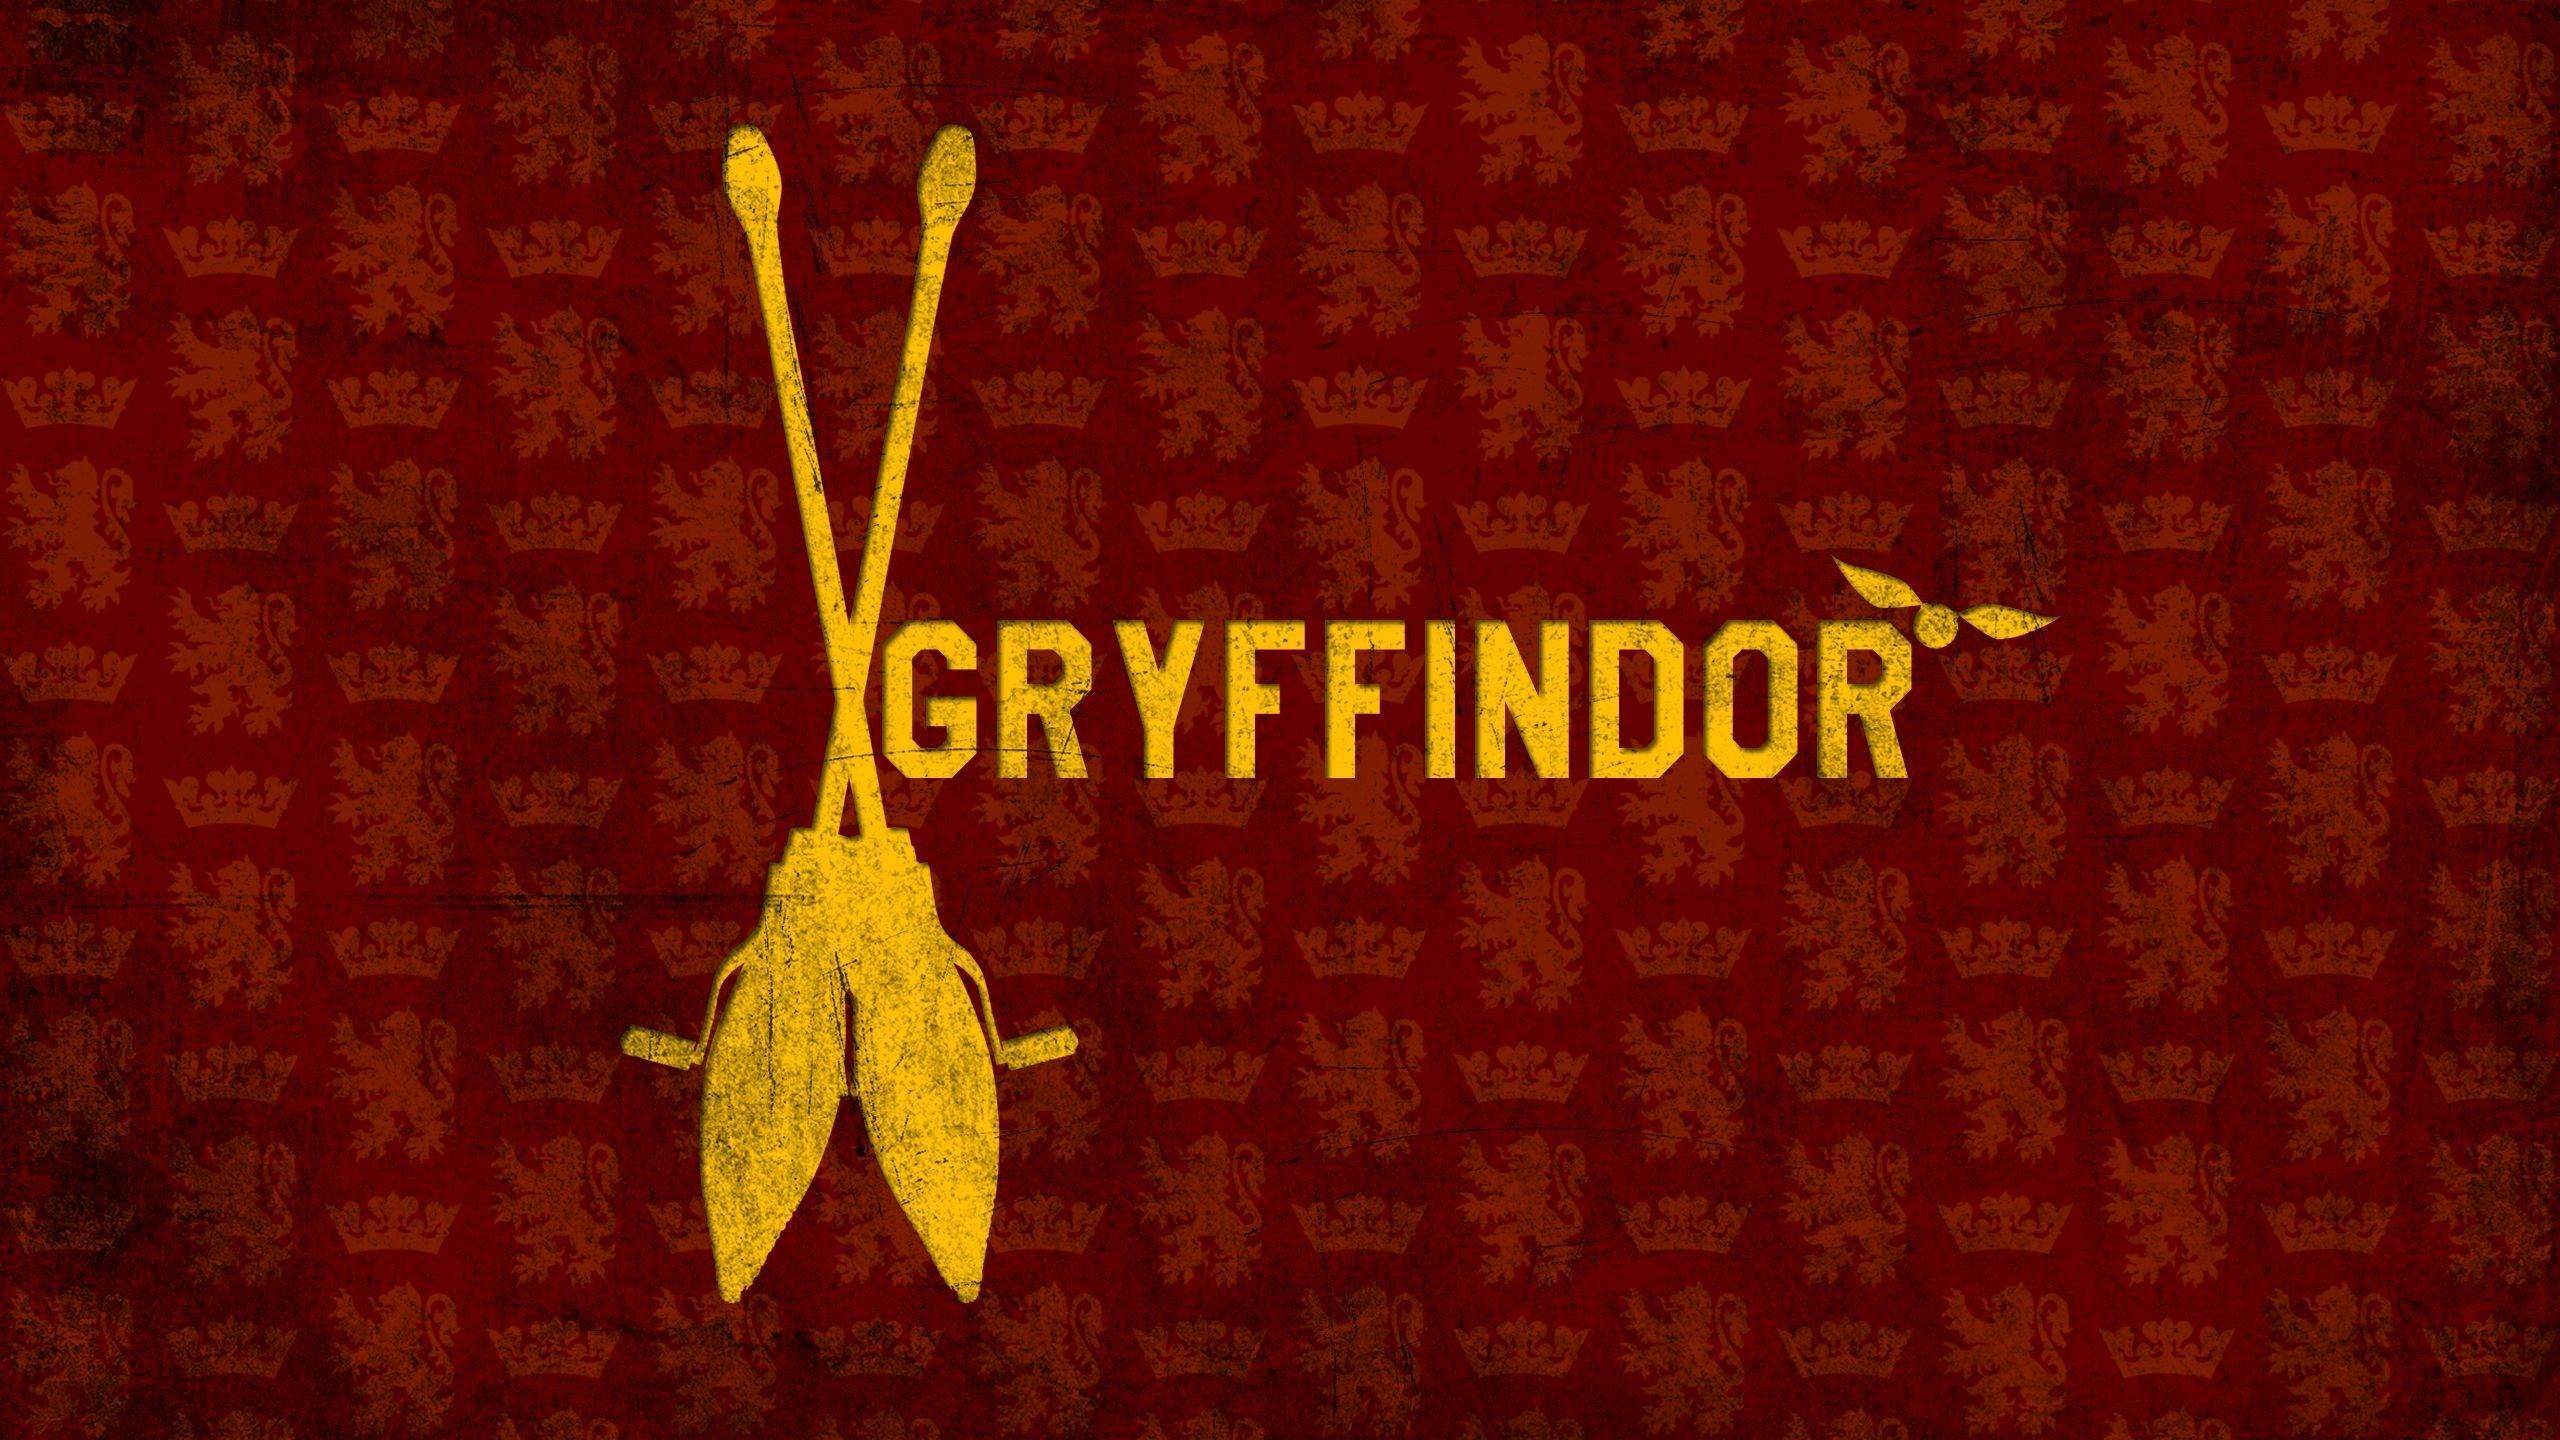 Harry Potter Gryffindor Desktop Wallpaper Free Harry Potter Gryffindor Desktop Background